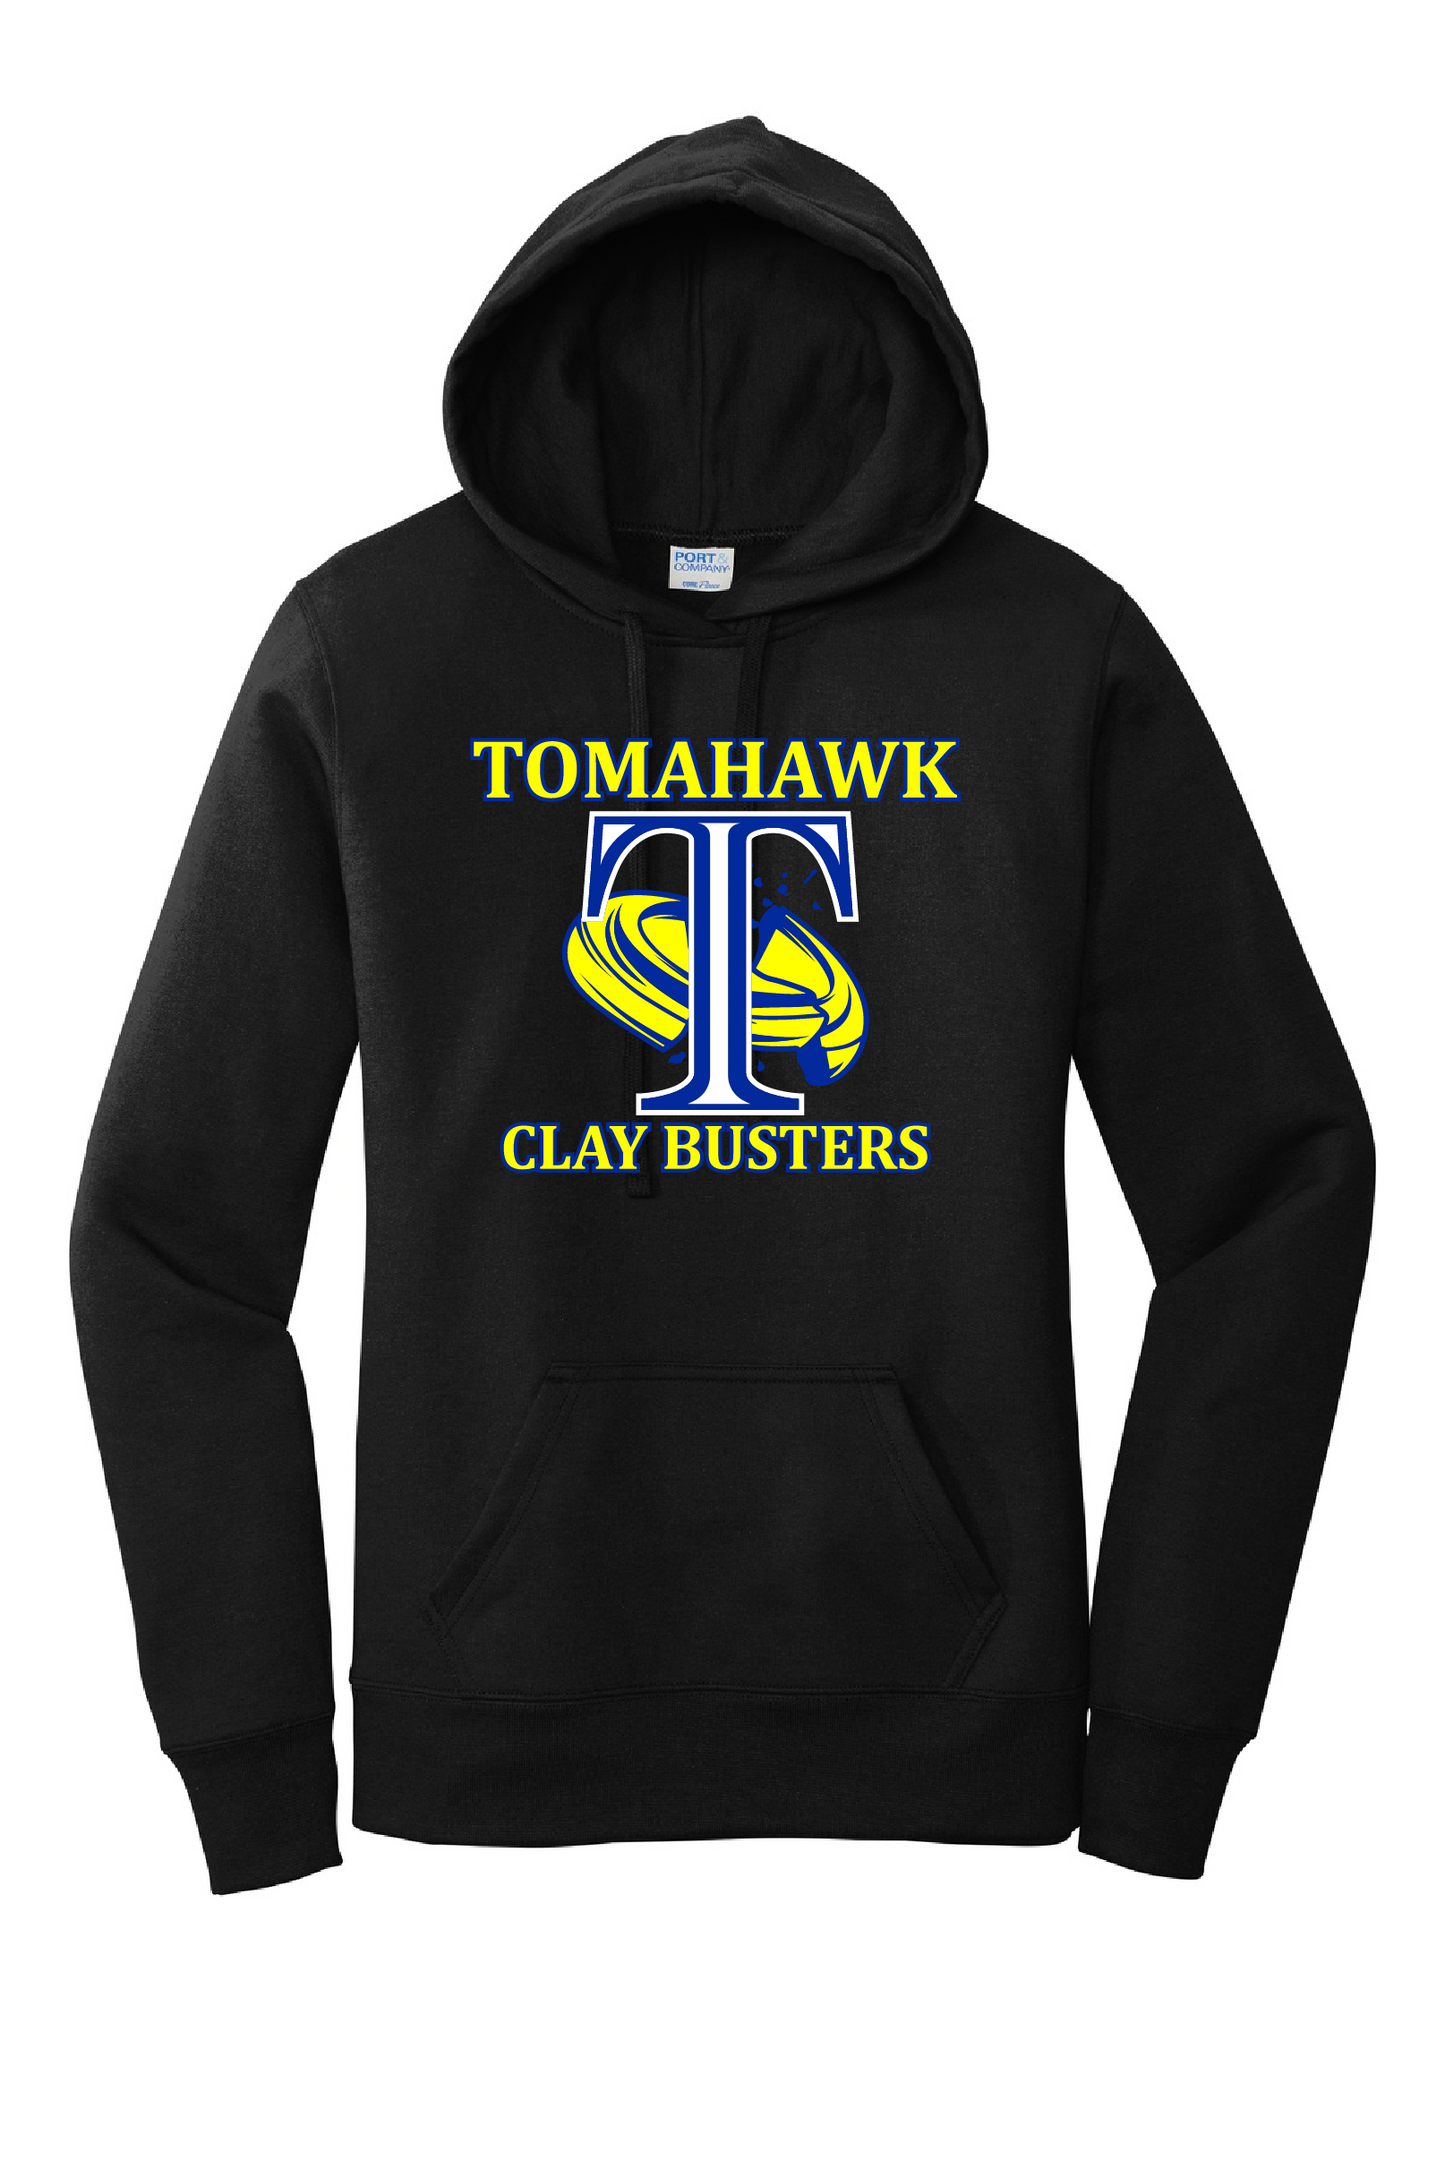 Tomahawk Claybusters  Hoodie